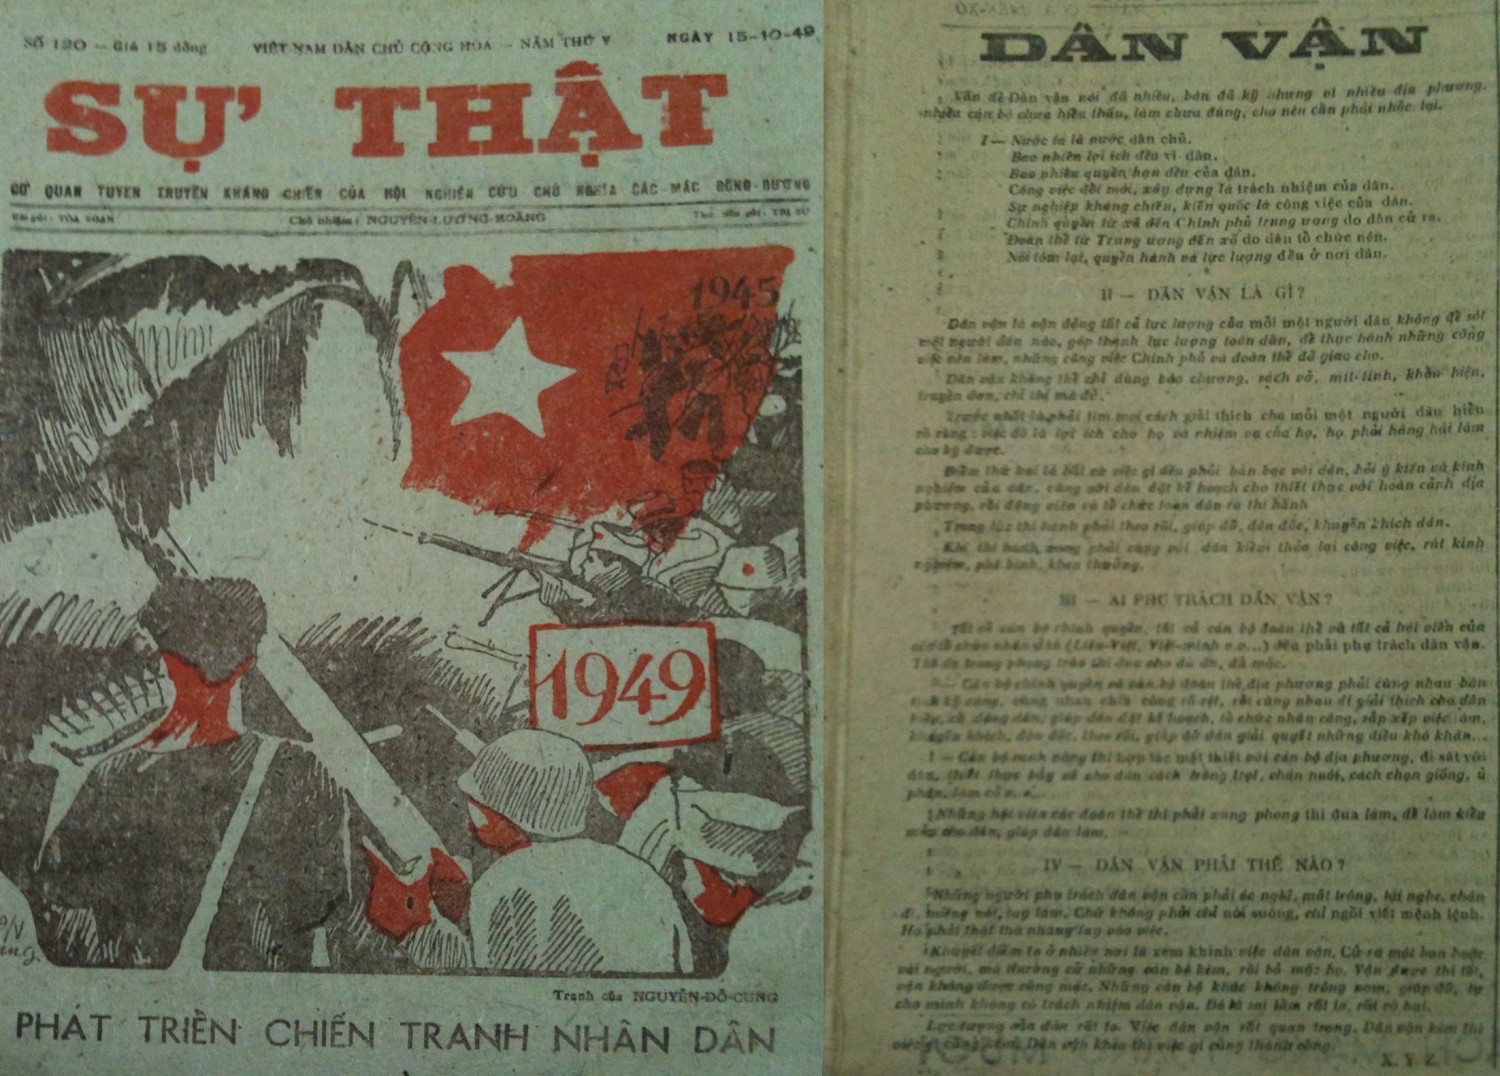 Tác phẩm "Dân vận" đăng trên báo Sự Thật ngày 15/10/1949.Ảnh Sưu tầm Internet